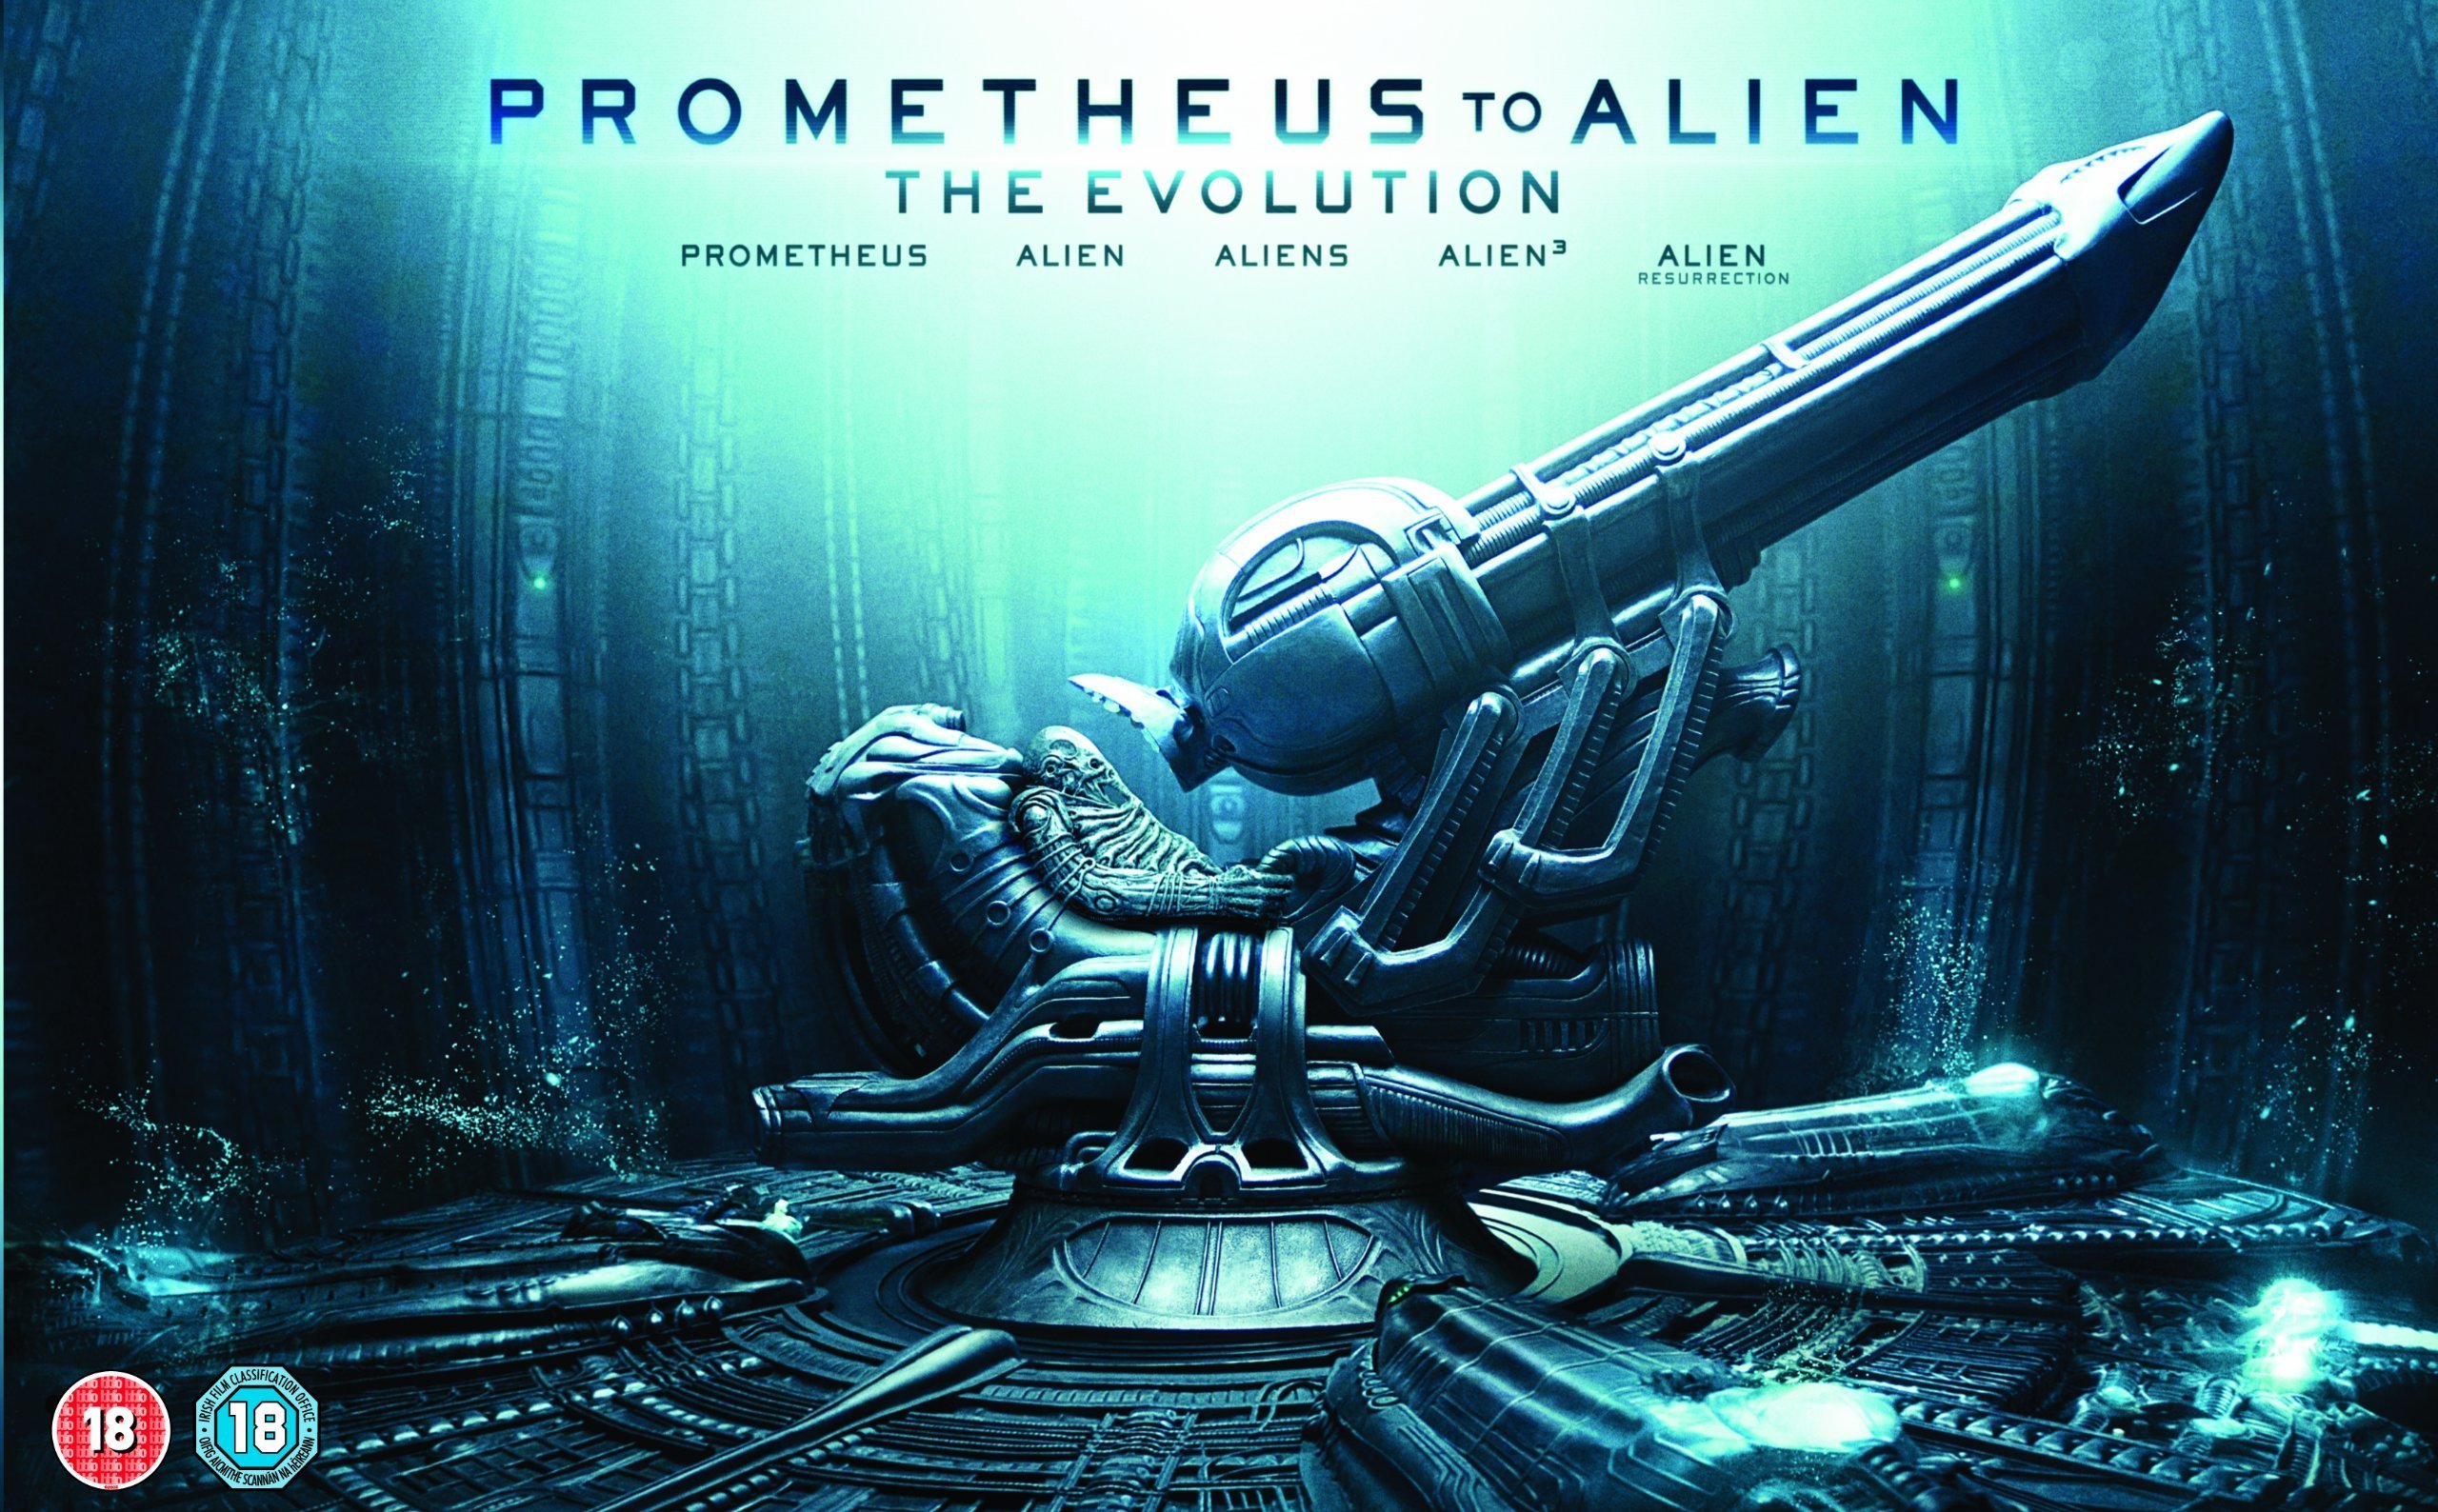 Prometheus to Alien: The Evolution Blu-Ray Set - AvPGalaxy